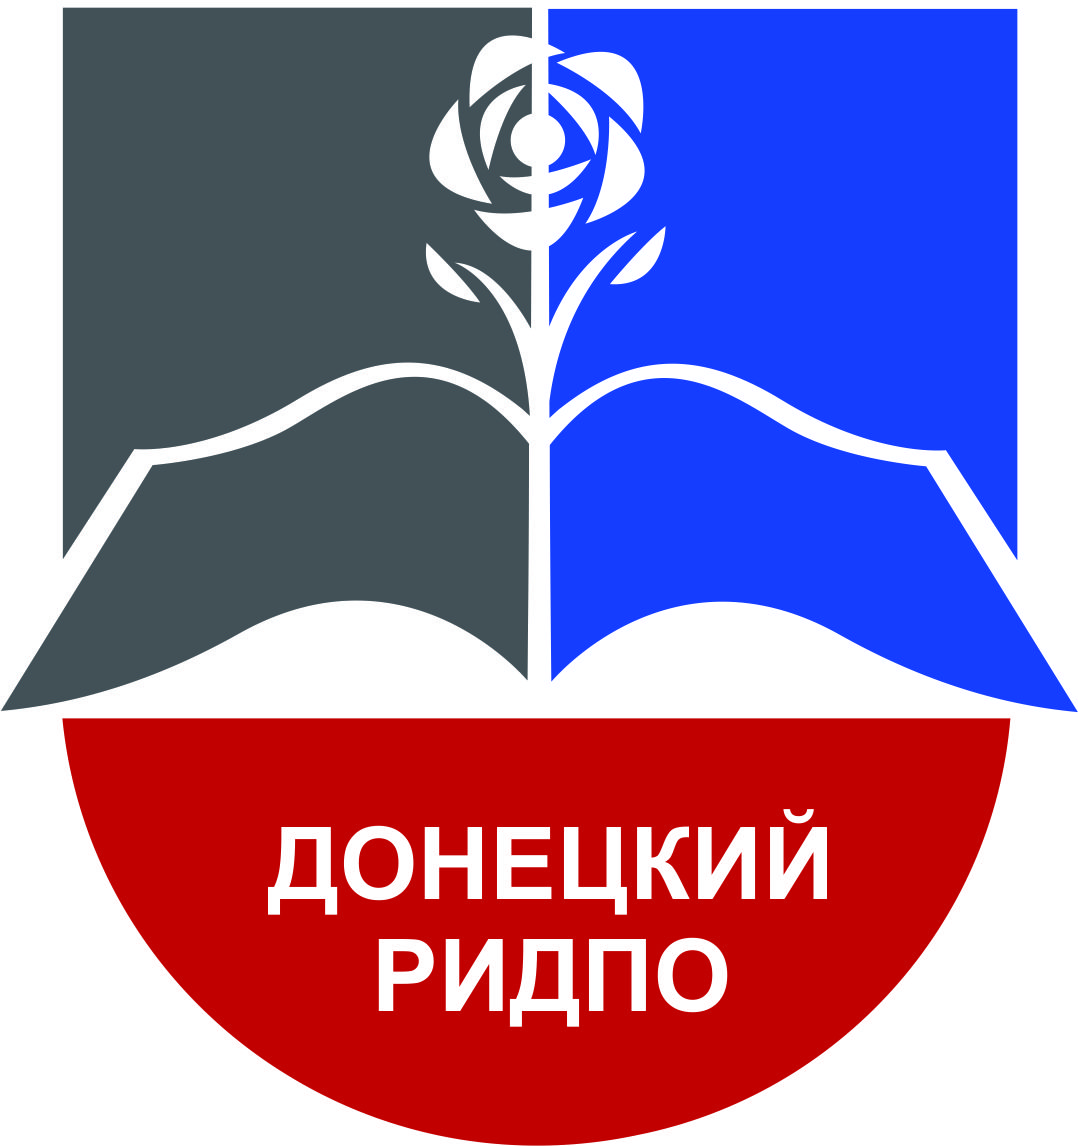 Заявка на дистанционное обучение в Донецкий республиканский институт